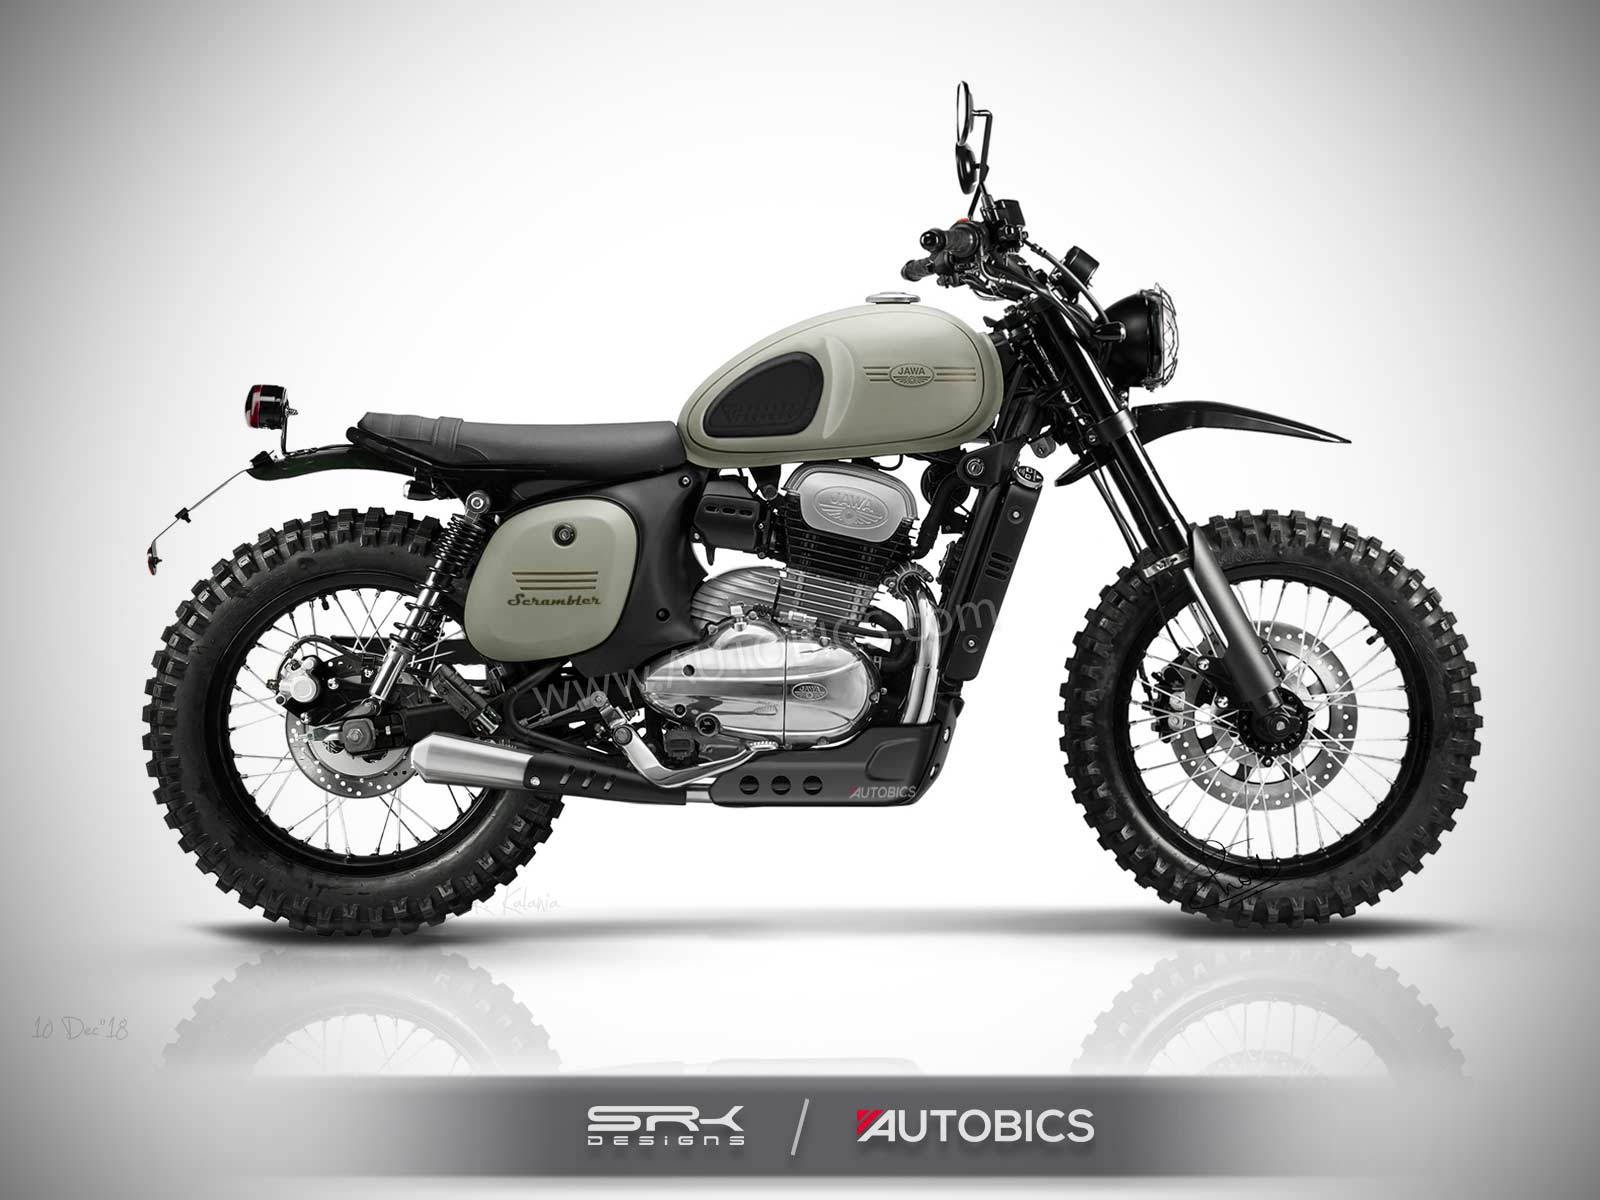 Jawa Scrambler Concept Motorcycle Imagined